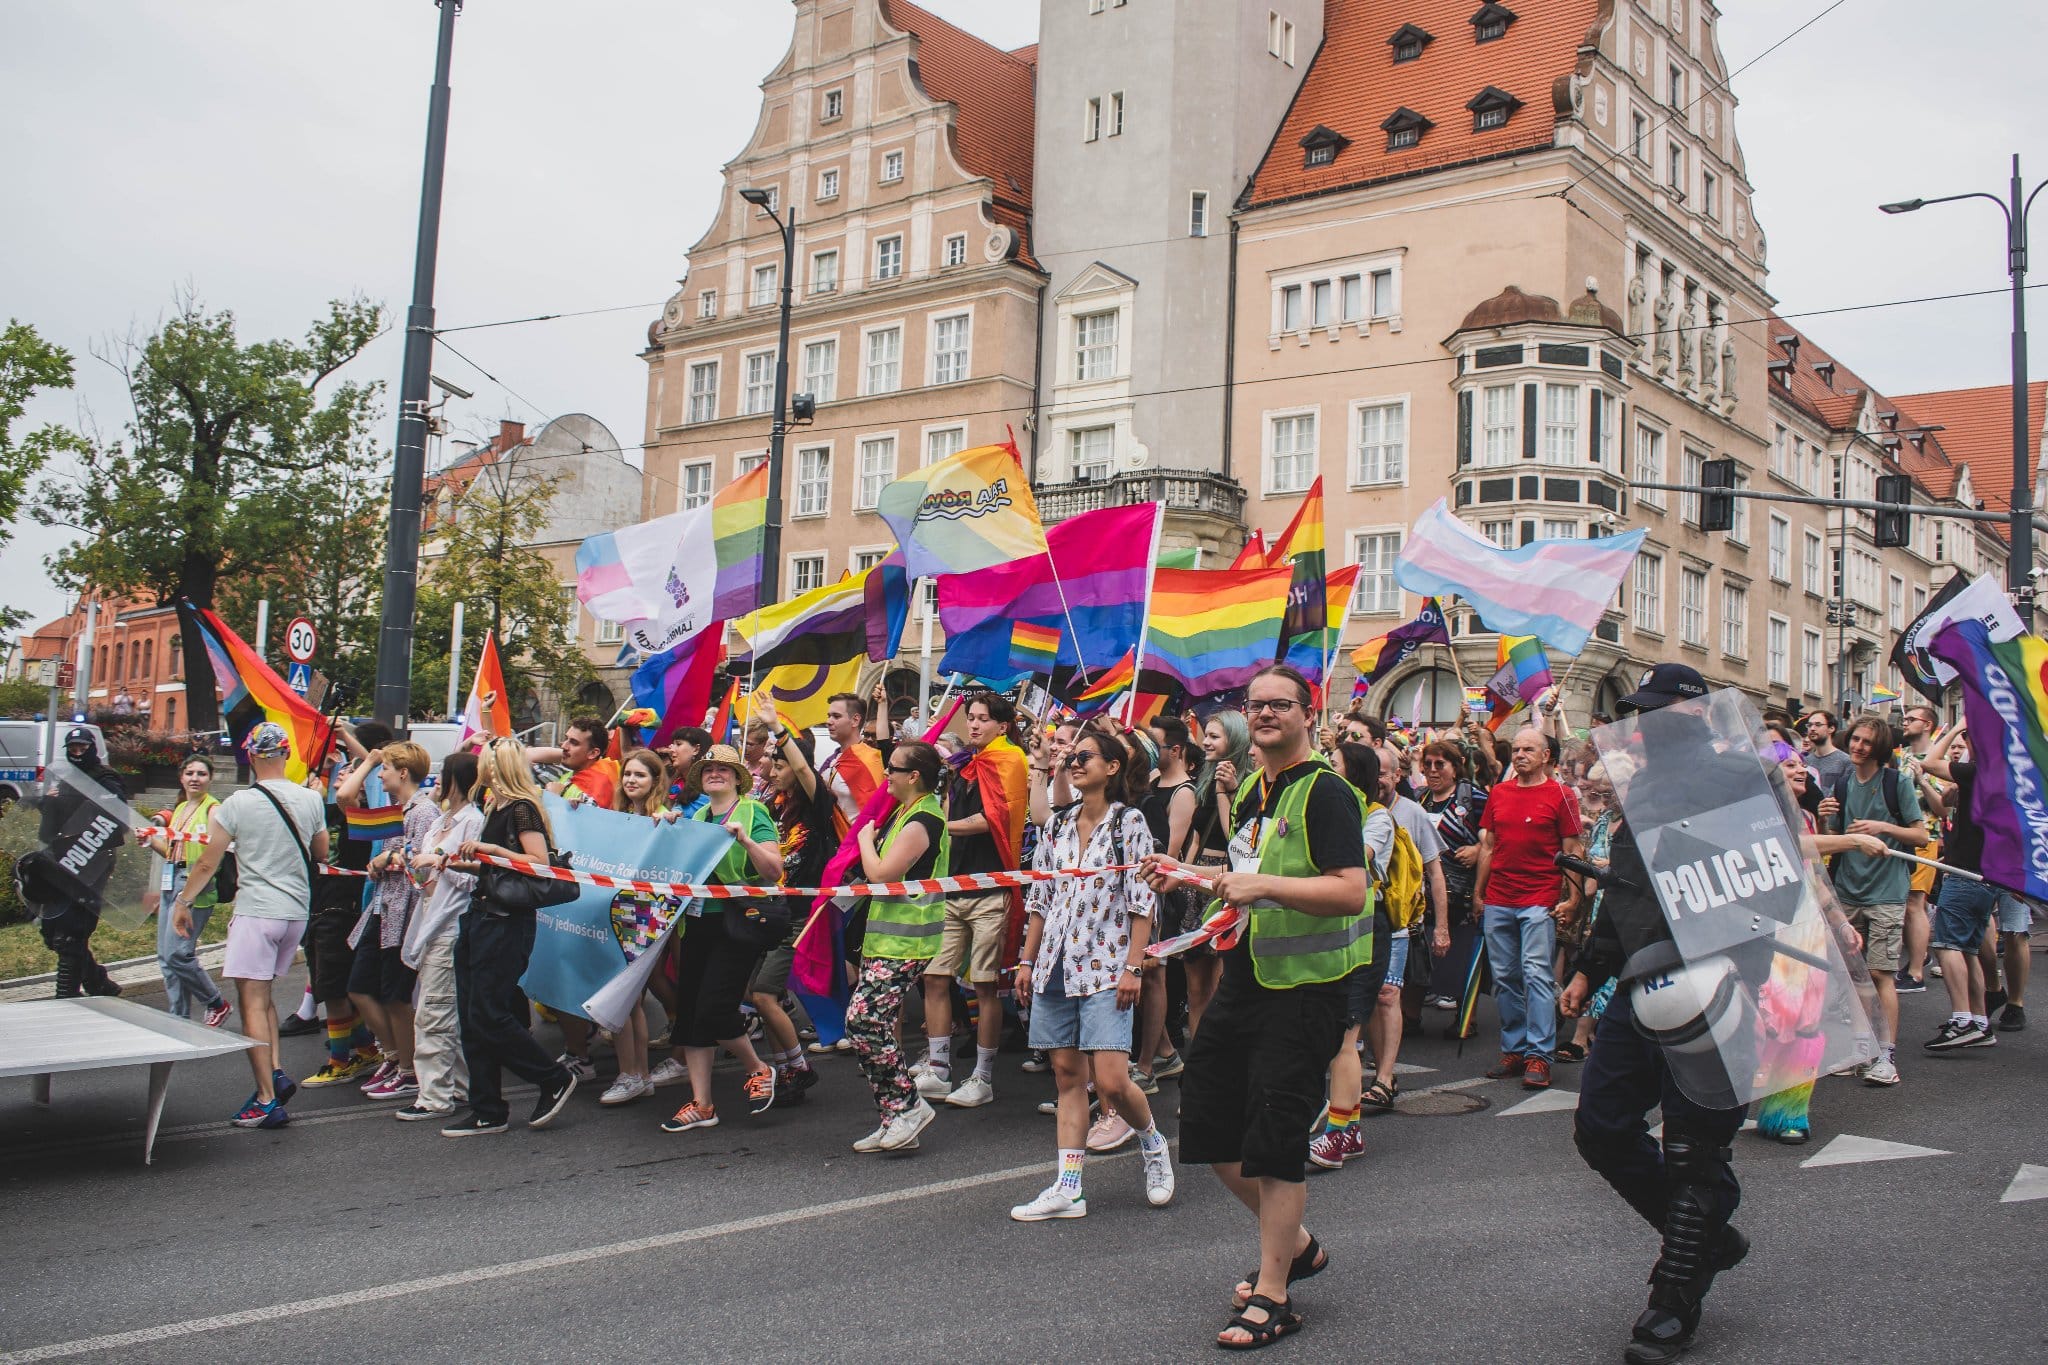 Sąd rozważa zażalenie organizatorek Marszu Równości w Olsztynie społeczeństwo Węgorzewo, Wiadomości, zemptypost, zPAP